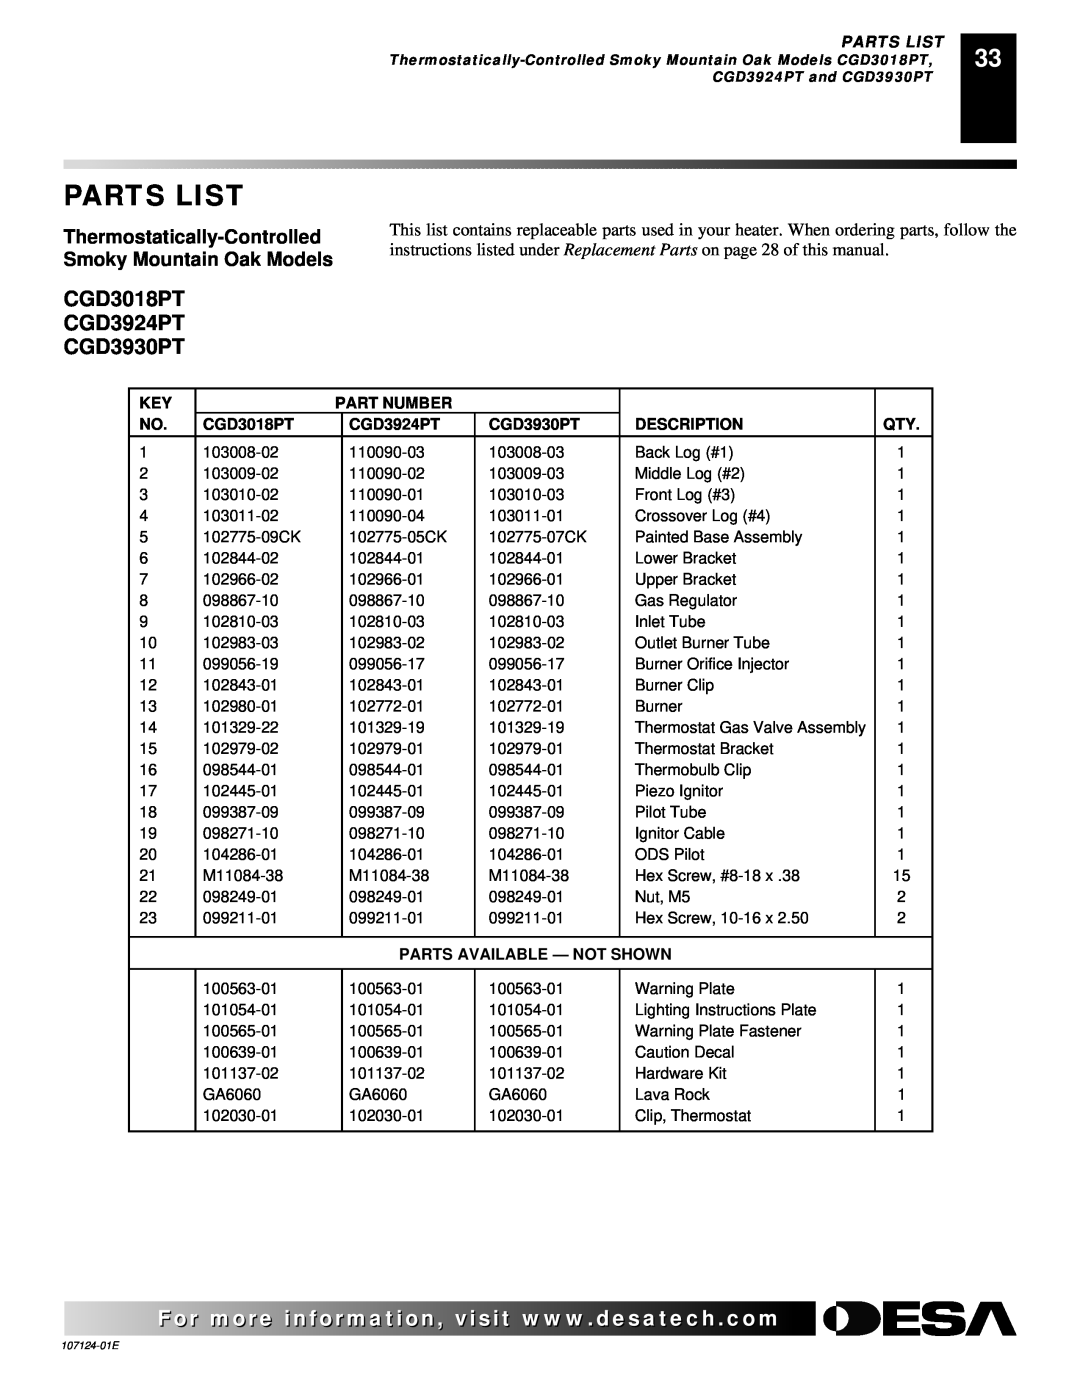 Desa CRL2718P Parts List, CGD3018PT CGD3924PT CGD3930PT, Part Number, Description, Parts Available - Not Shown 